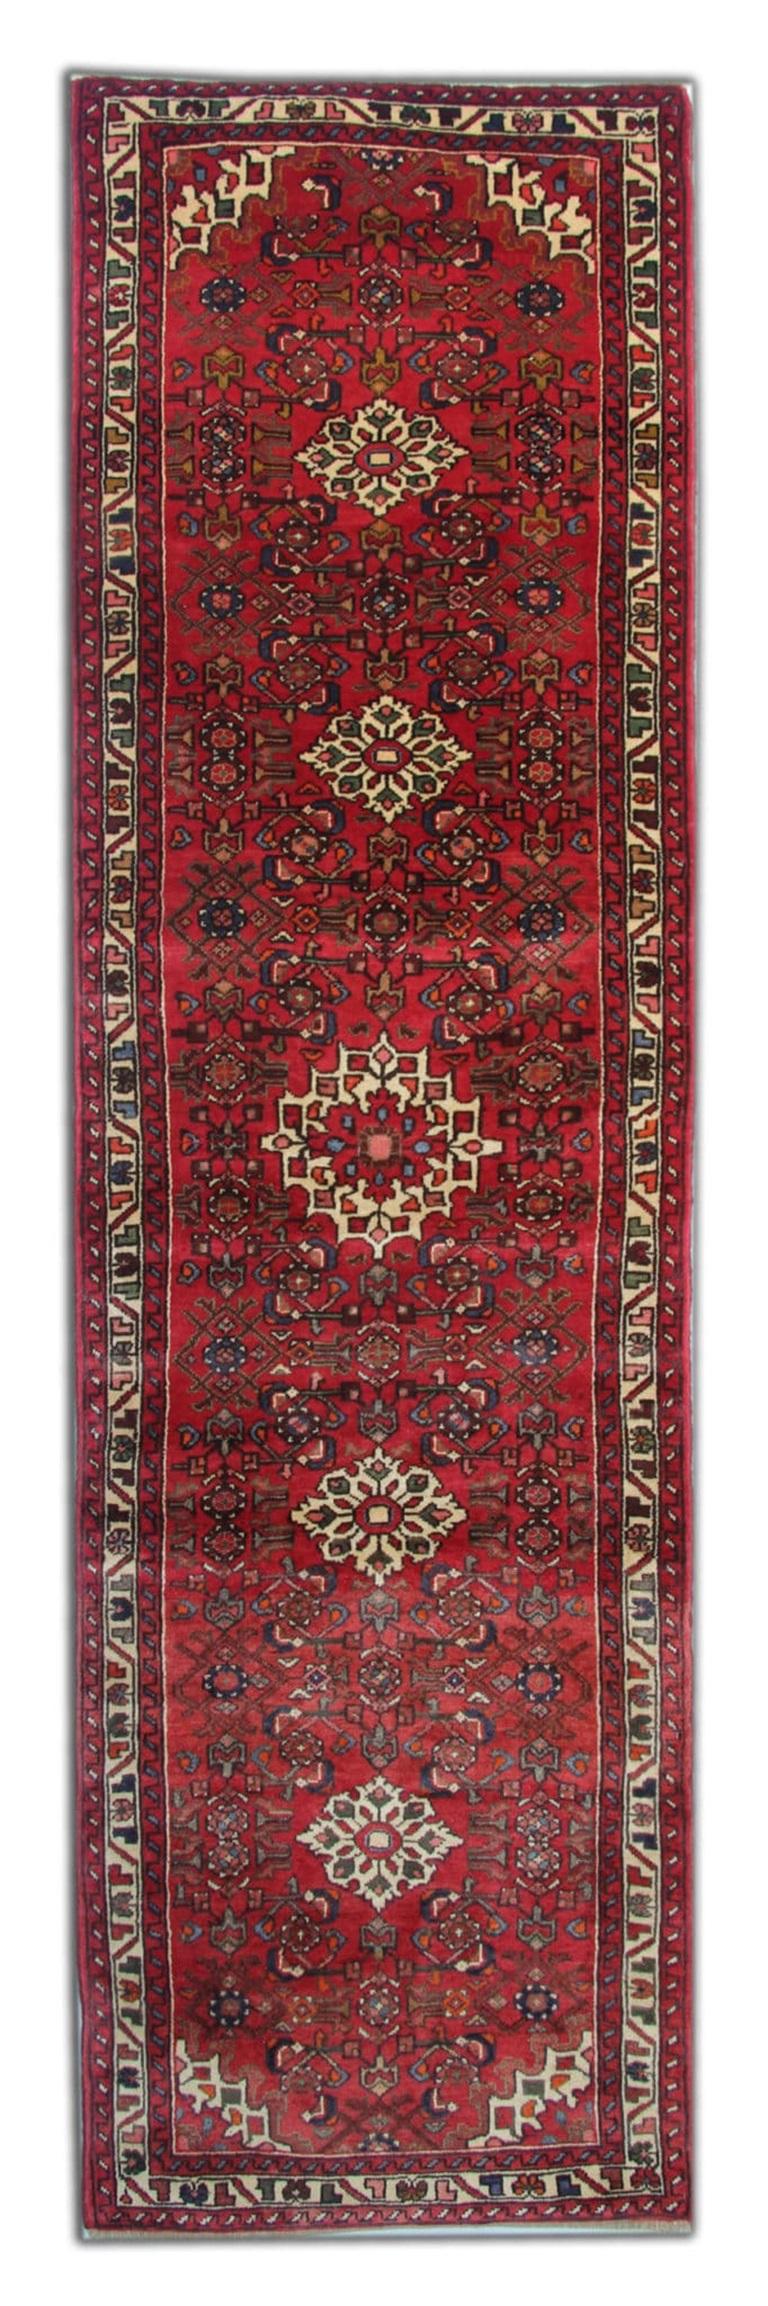 Persian Vintage Hussein Abad Runner Rug, Red Stair Runner, Wool Rug For Sale